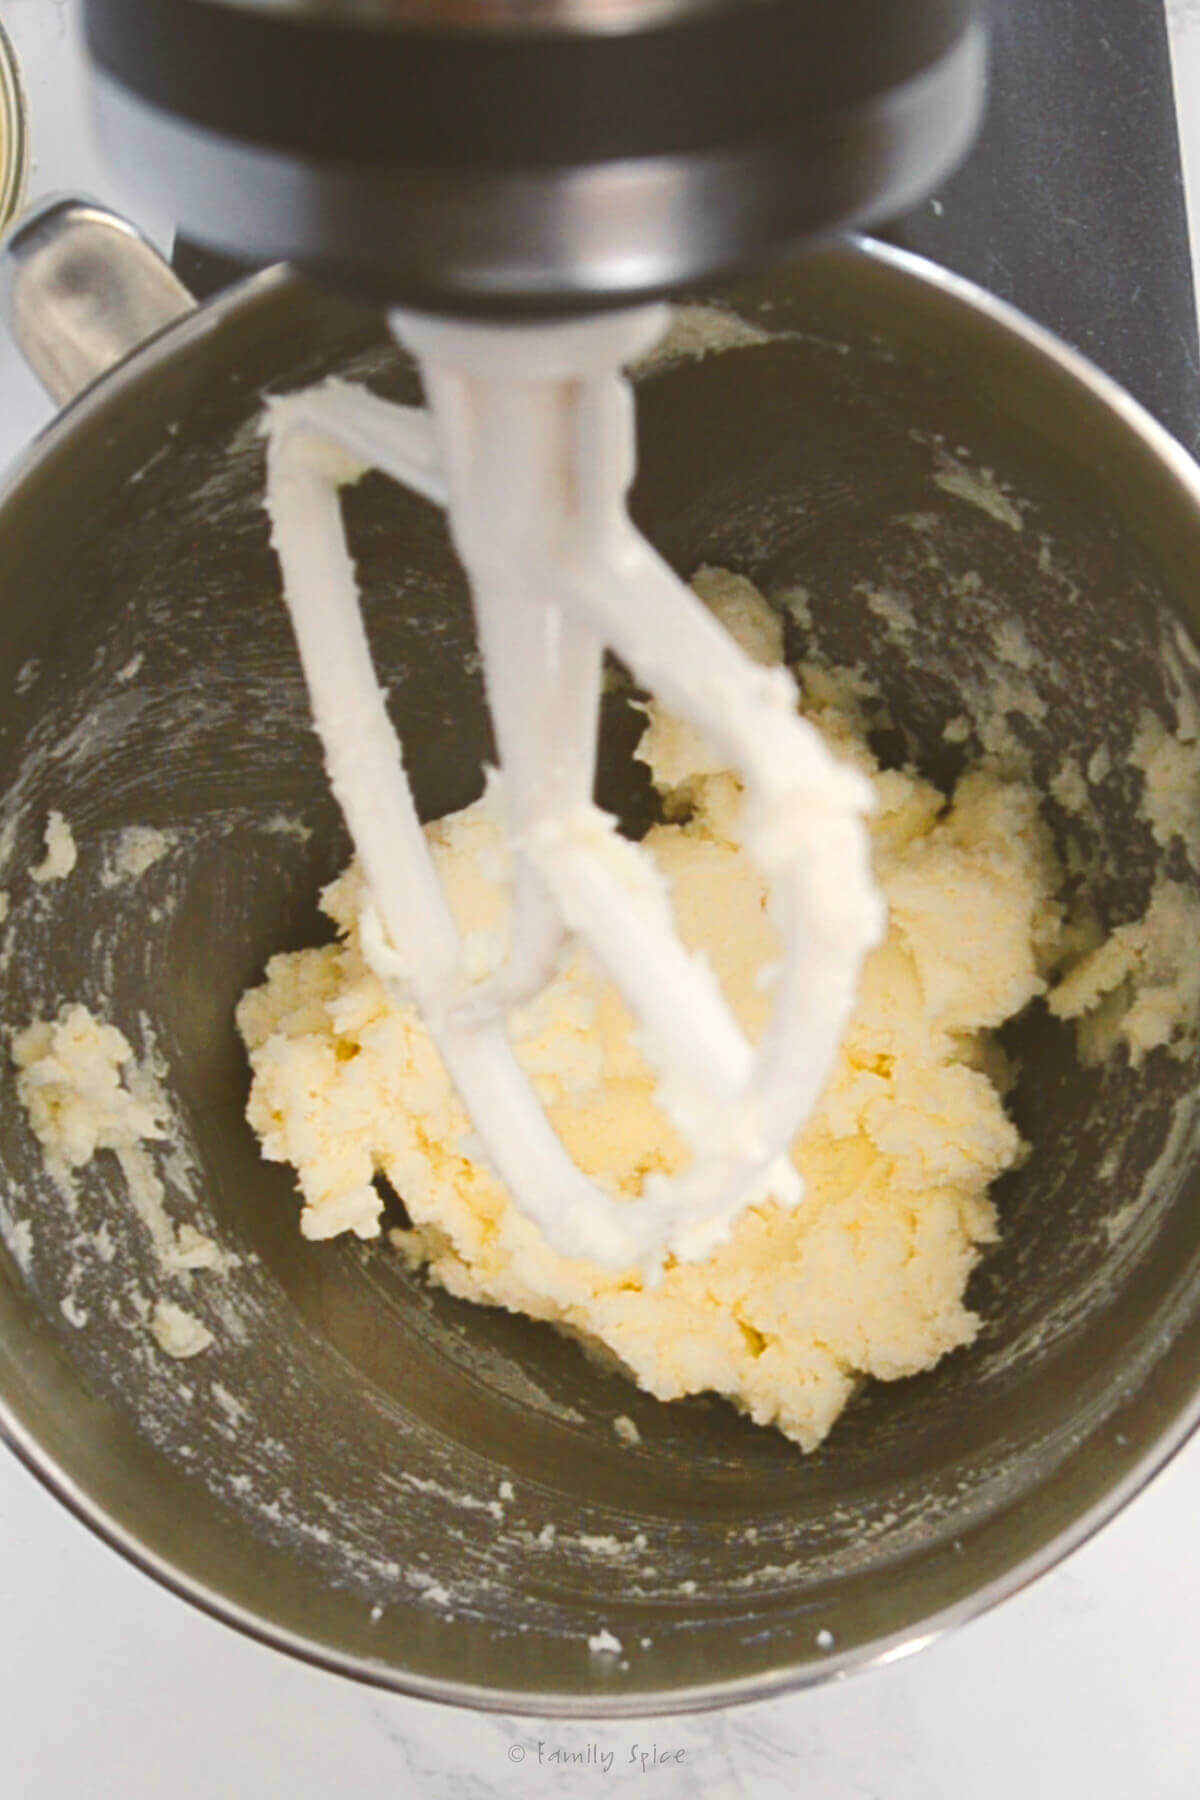 A mixer mixing up sugar cookie dough